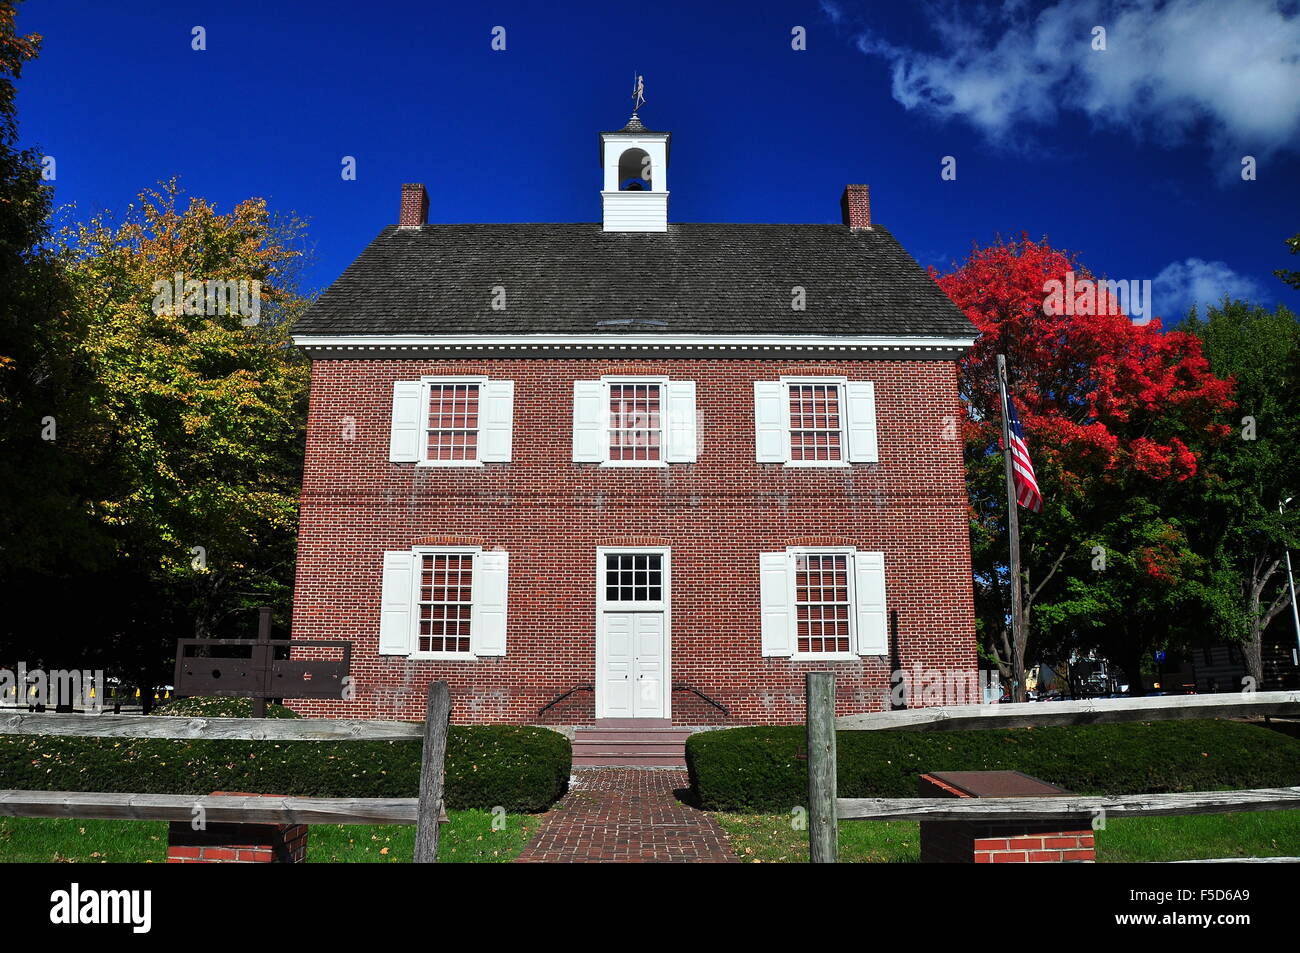 York, Pennsylvania: Restauriert 1754 georgianischen Stil Colonial Gerichtshaus mit Kuppel auf dem Dach und Holzschäfte * Stockfoto